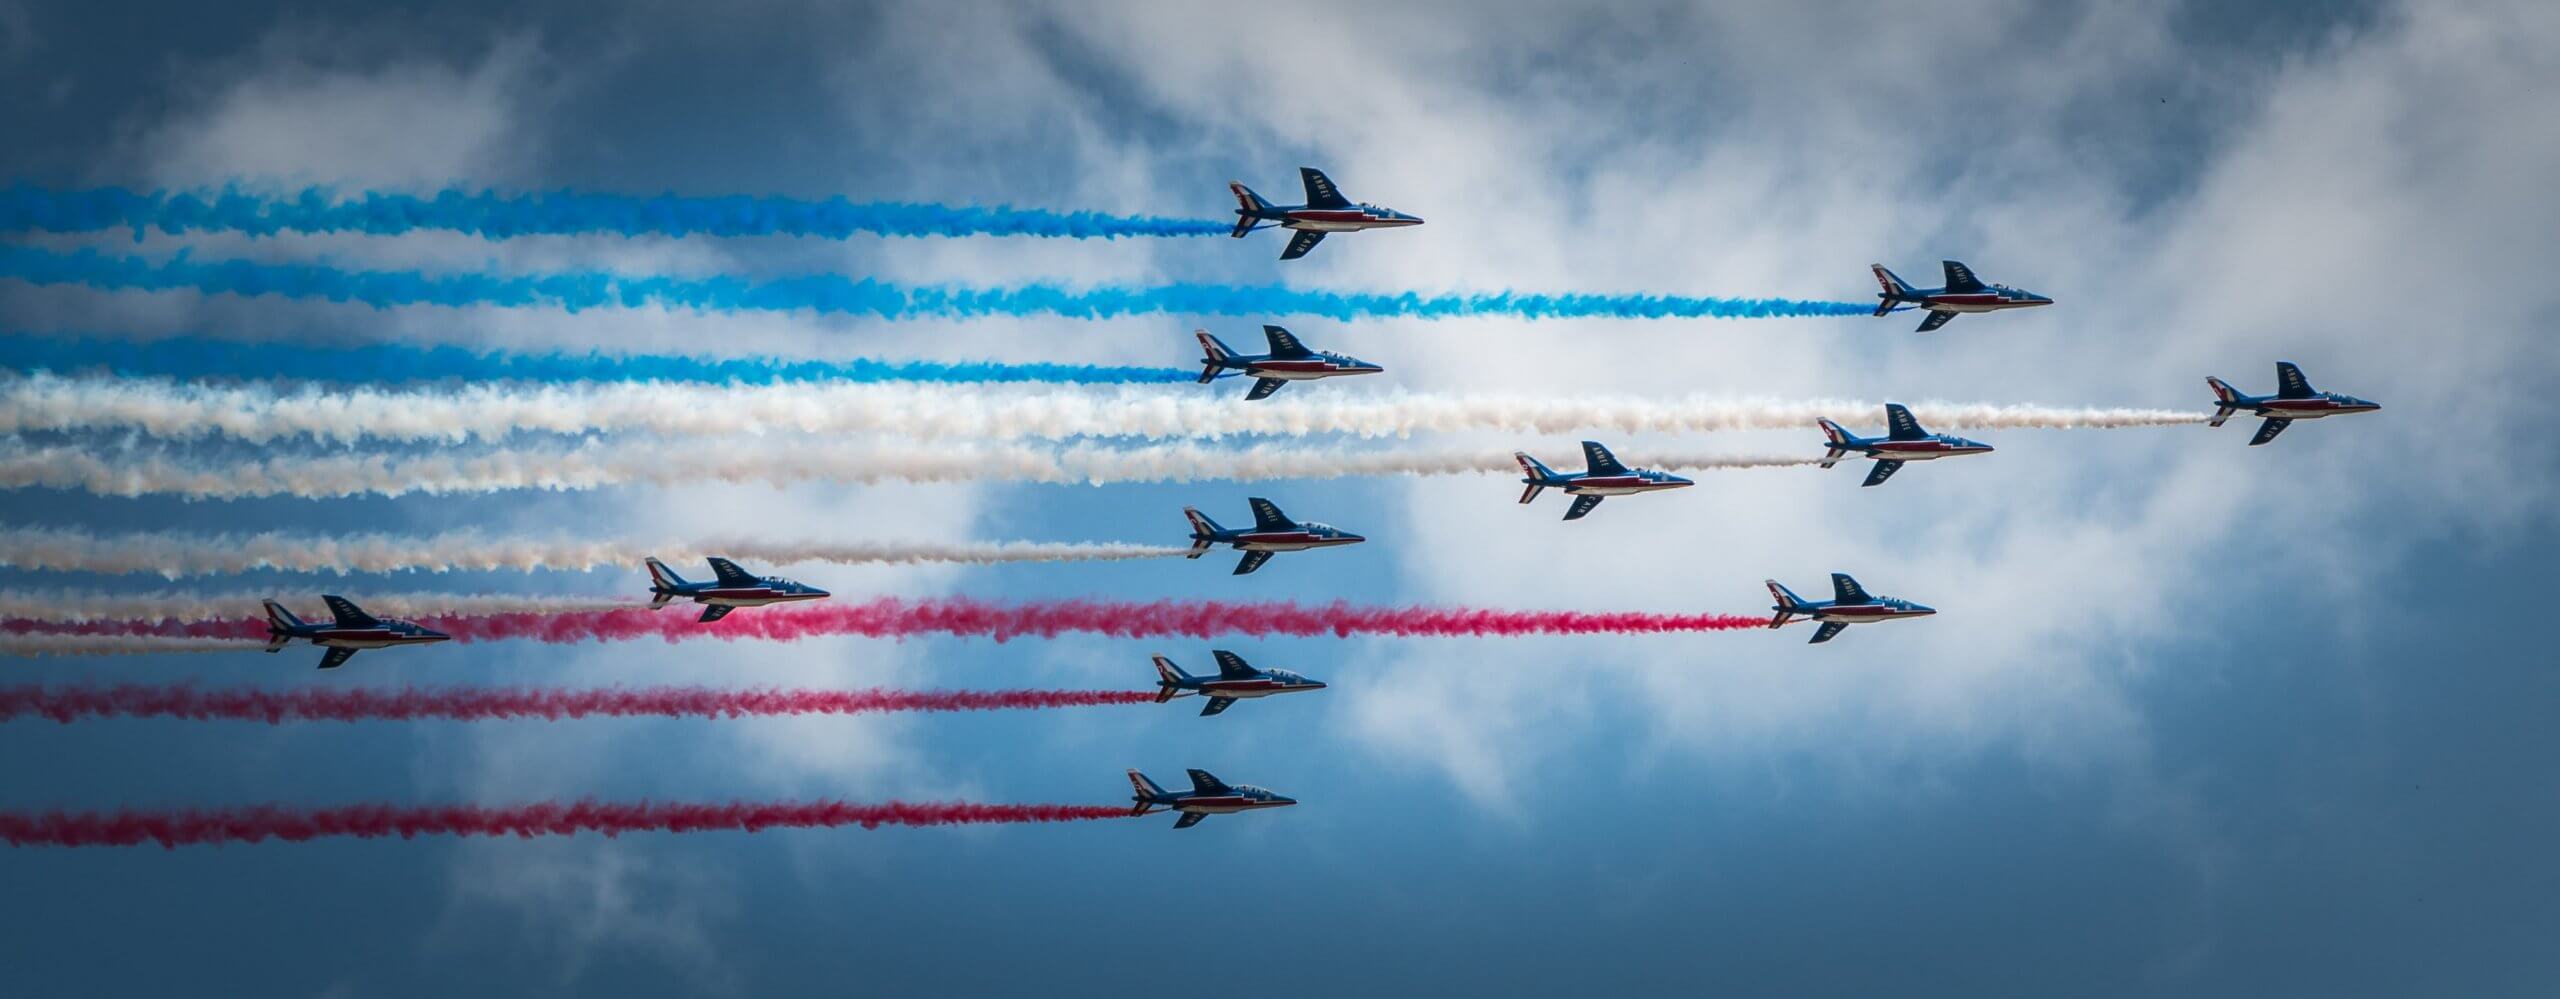 aviones militares con humo de colores para festejar la fiesta nacional francesa